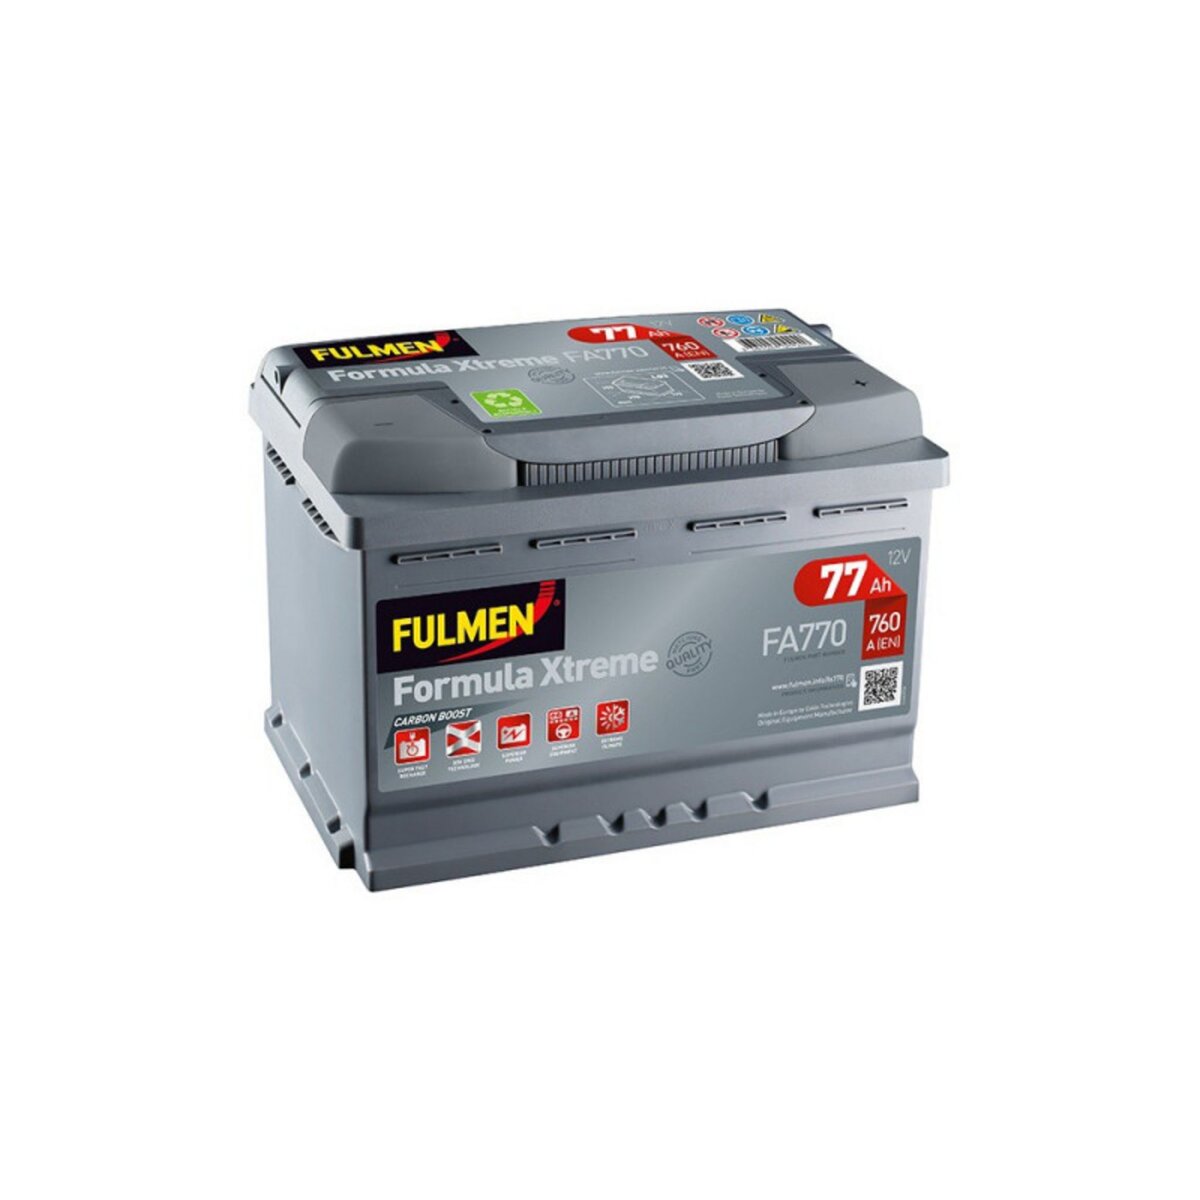 FULMEN Batterie FULMEN Formula XTREME FA770 12v 77AH 760A pas cher - Auchan .fr